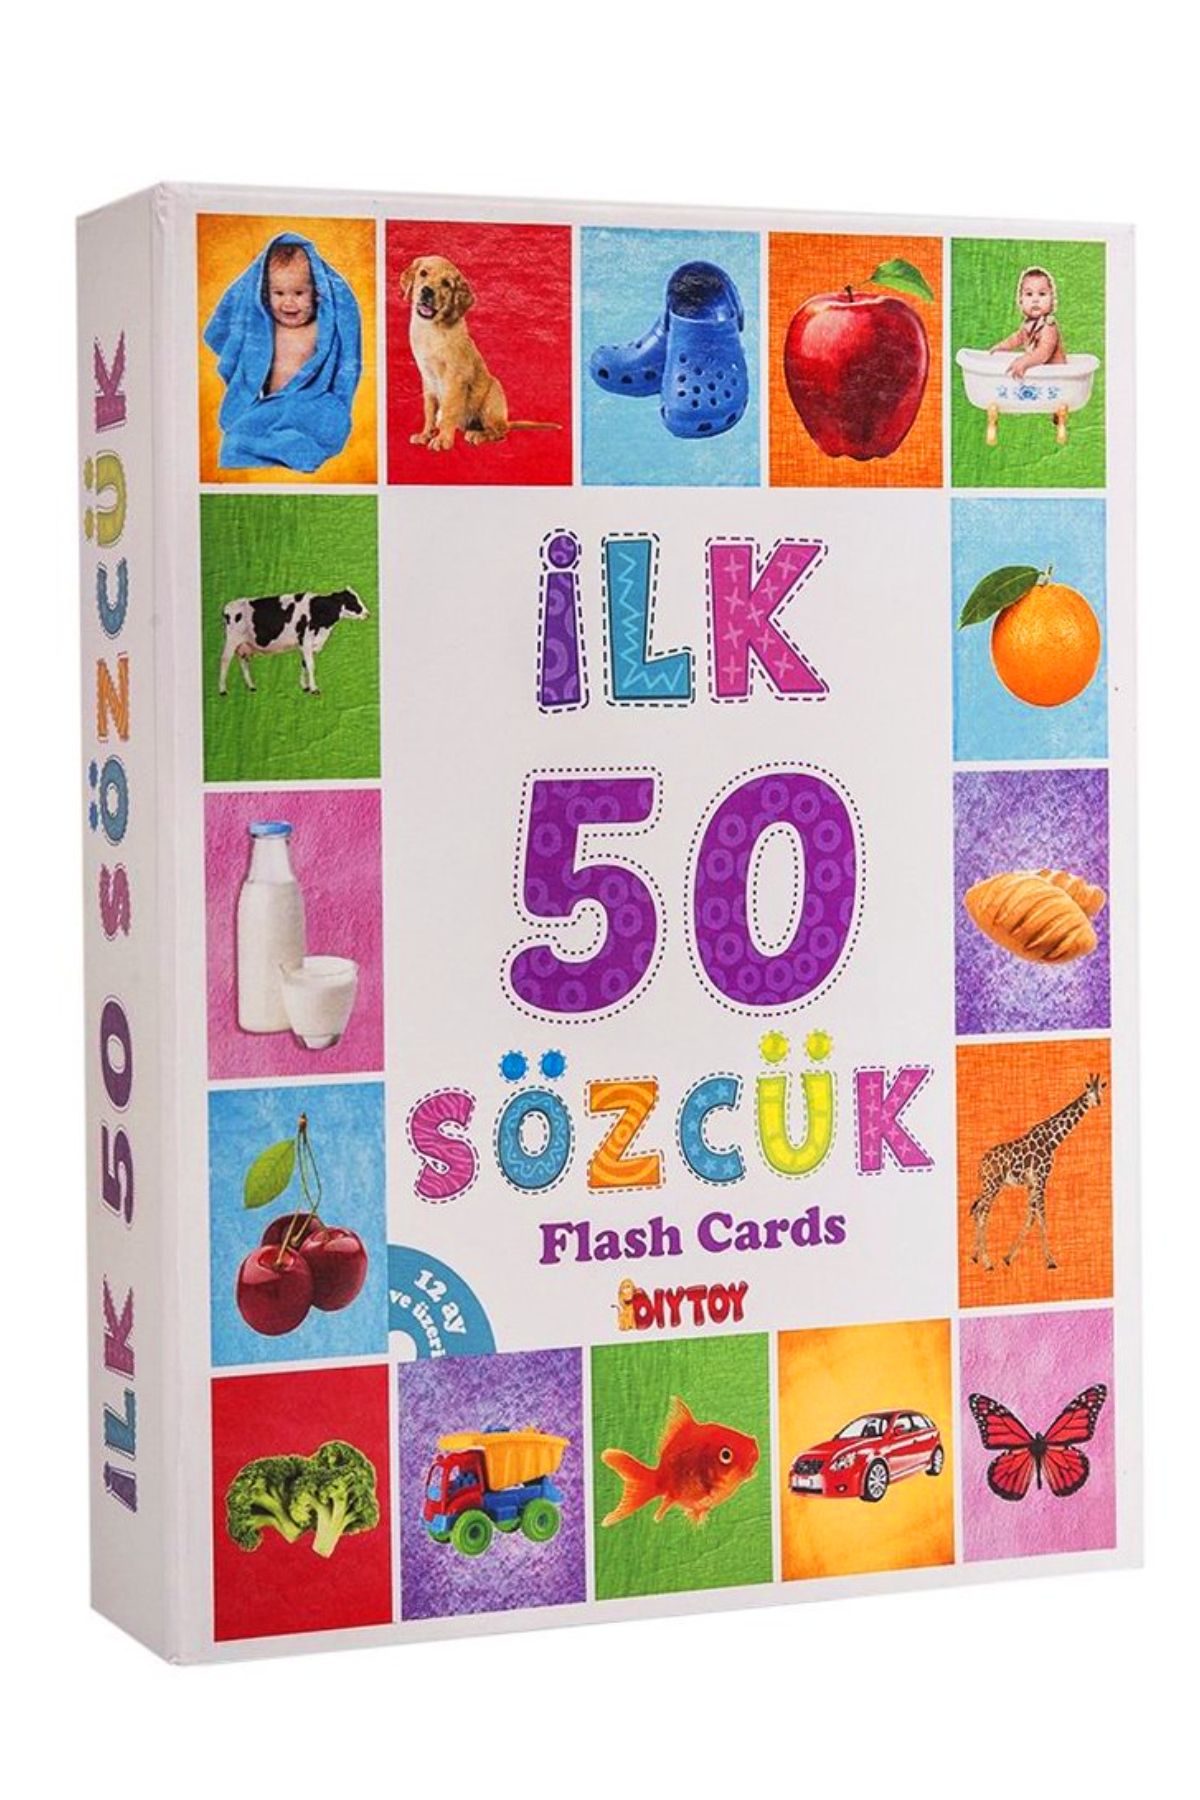 AVDA Ilk 50 Sözcük Bebeğimin Ilk Zeka Kartları Flash Cards